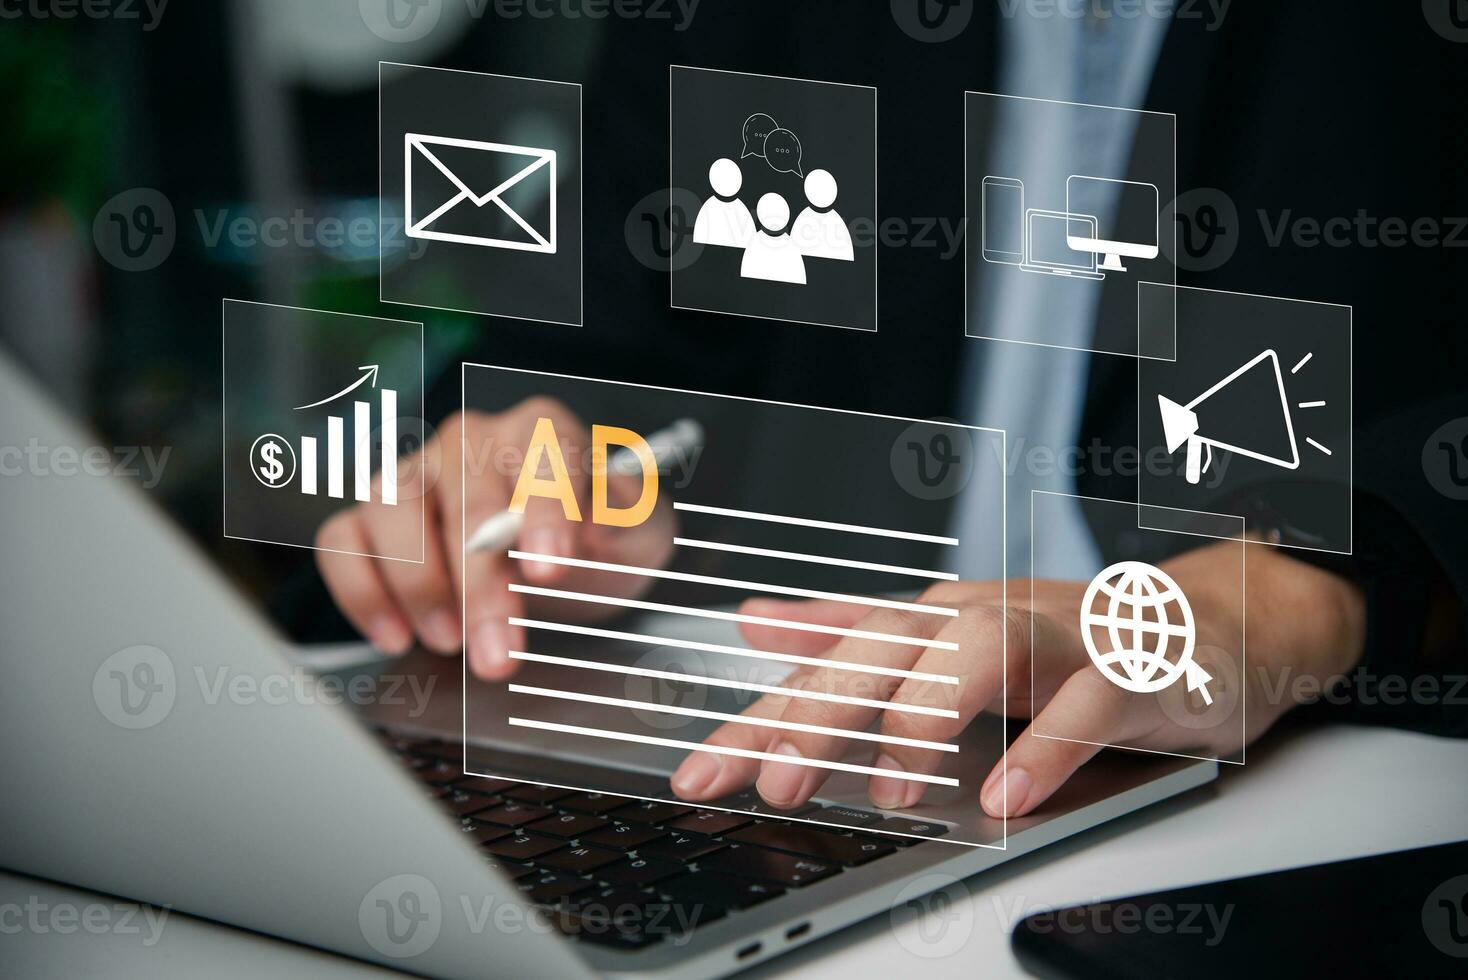 digital márketing estrategia para en línea publicidad, anuncio en sitio web y social medios de comunicación. foto